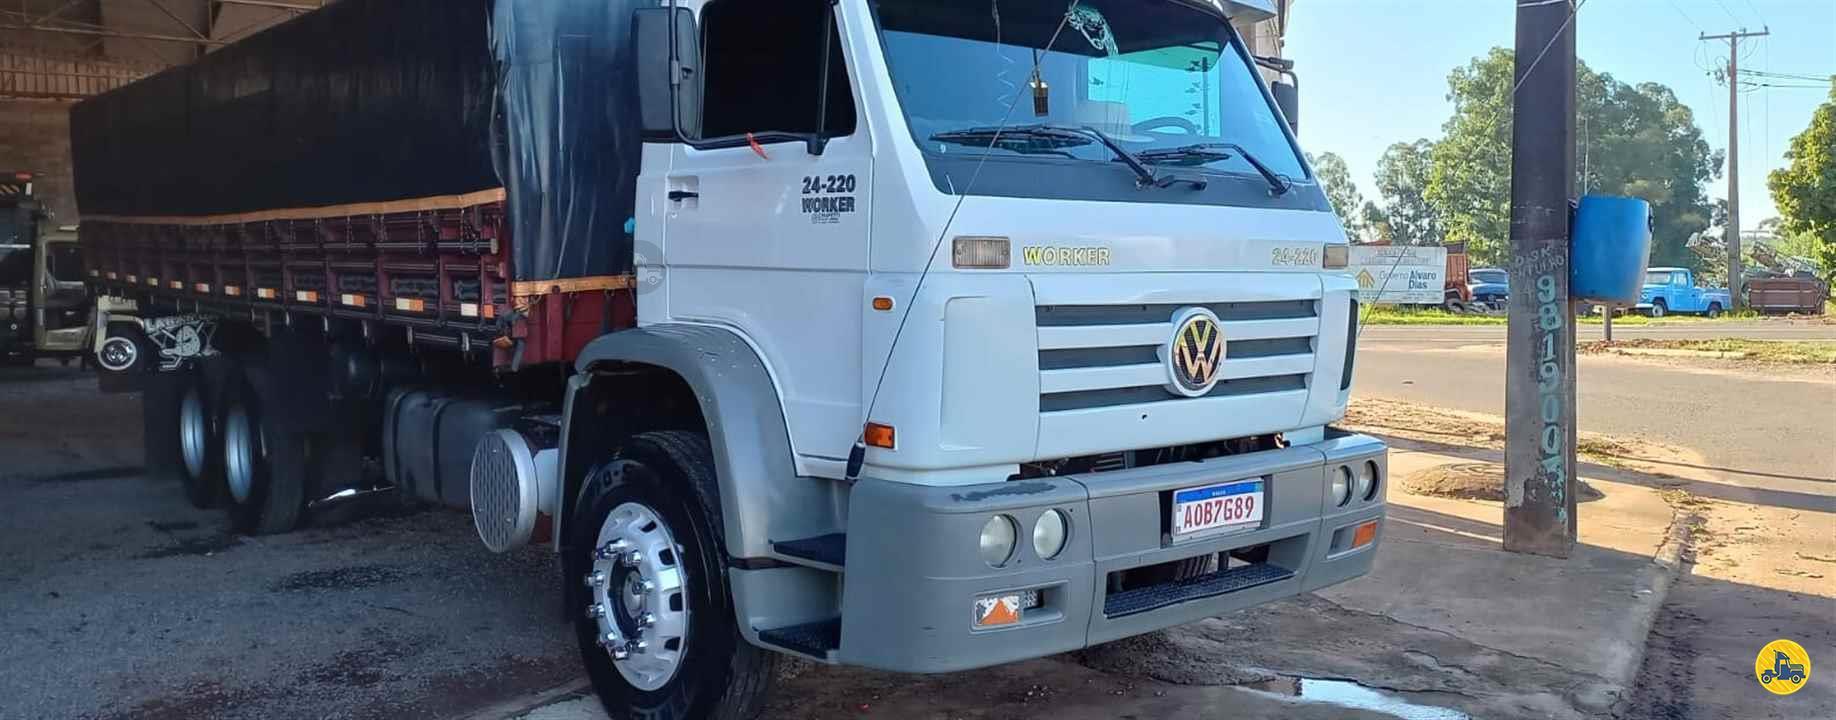 VW 24220